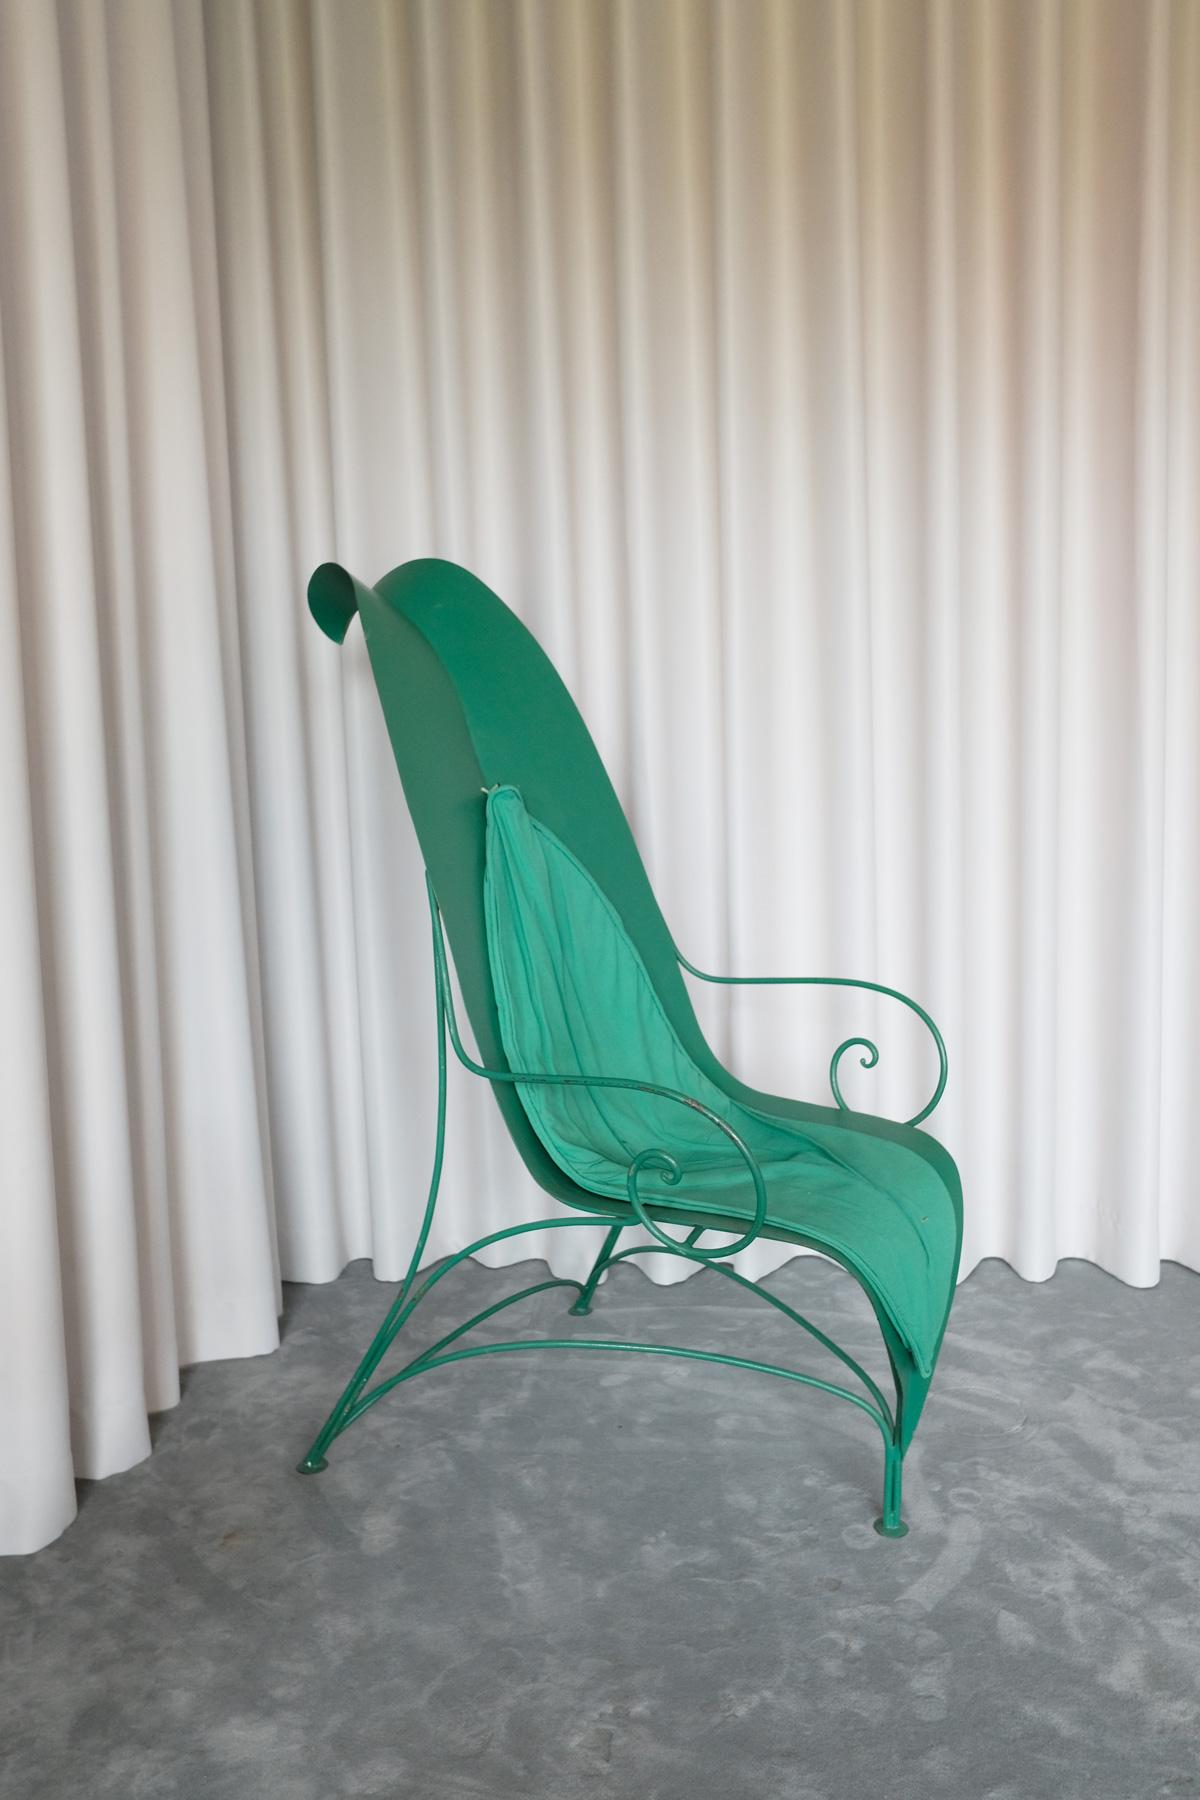 Foglia Chair, Fabrizio Corneli for Mirabili, 1986 In Fair Condition For Sale In Berlin, BE